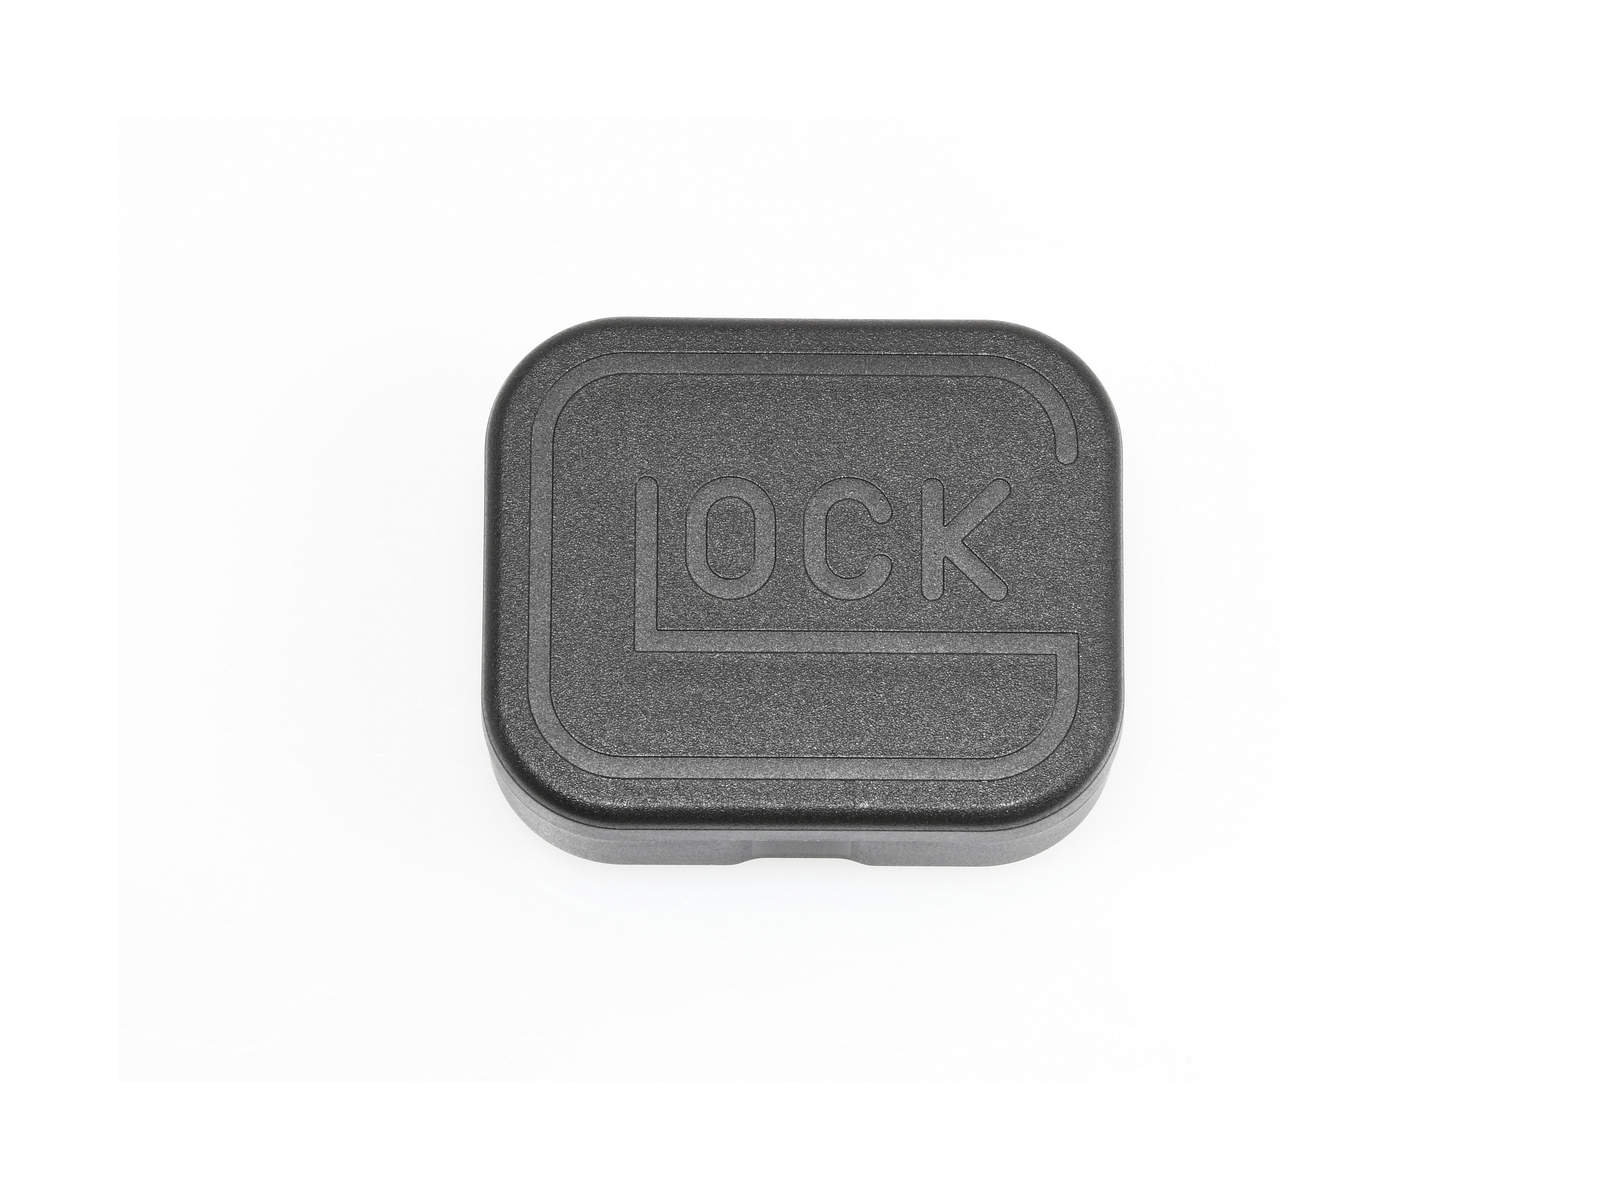 GLOCK KeyRing キーホルダー/Glock Logo (Metal Silver)